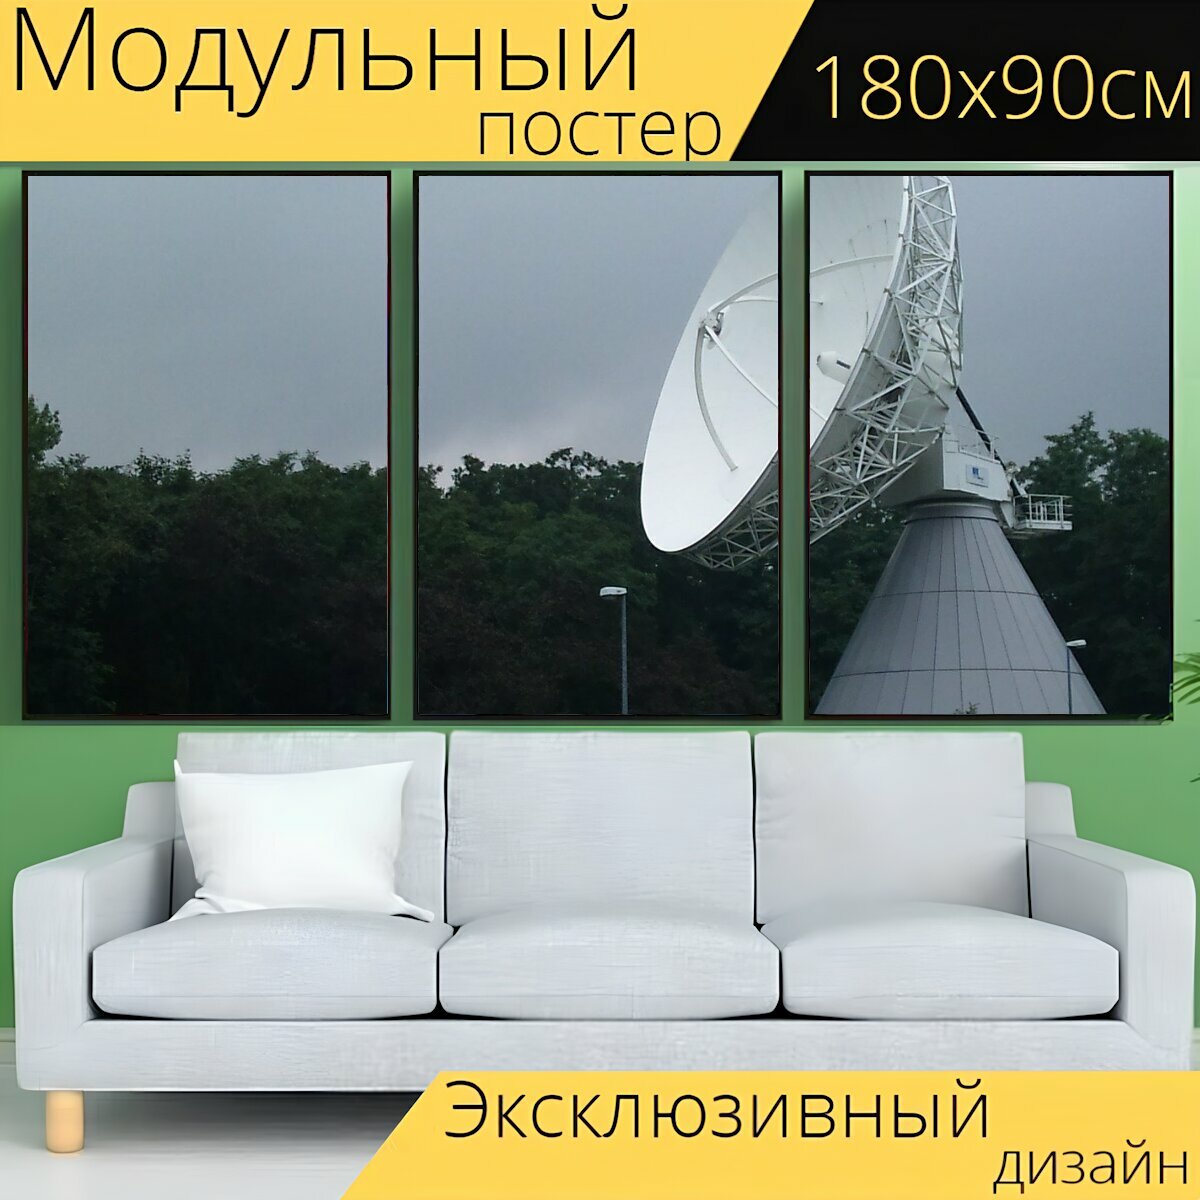 Модульный постер "Спутниковая тарелка, телекоммуникации, спутниковое" 180 x 90 см. для интерьера